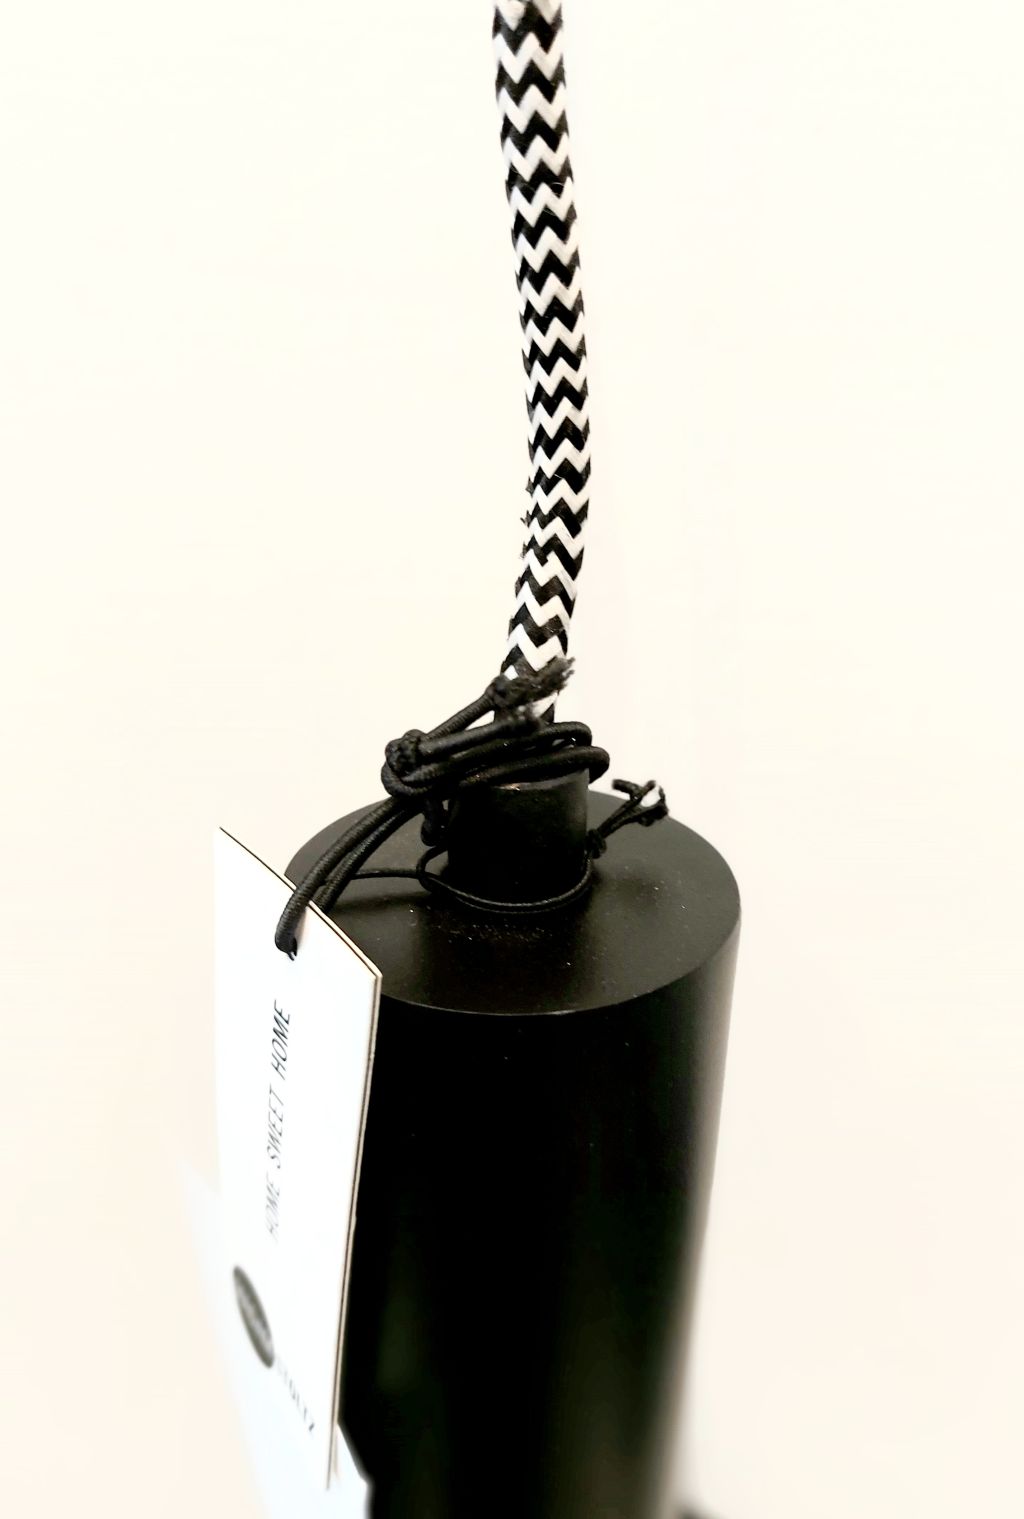 Madam Stoltz - Madam Stoltz LAMPE Hängelampe 39,- € BLACK 15,5x27 cm  / 2 Meter Zuleitung  kaufen bei luiseundfritz.de